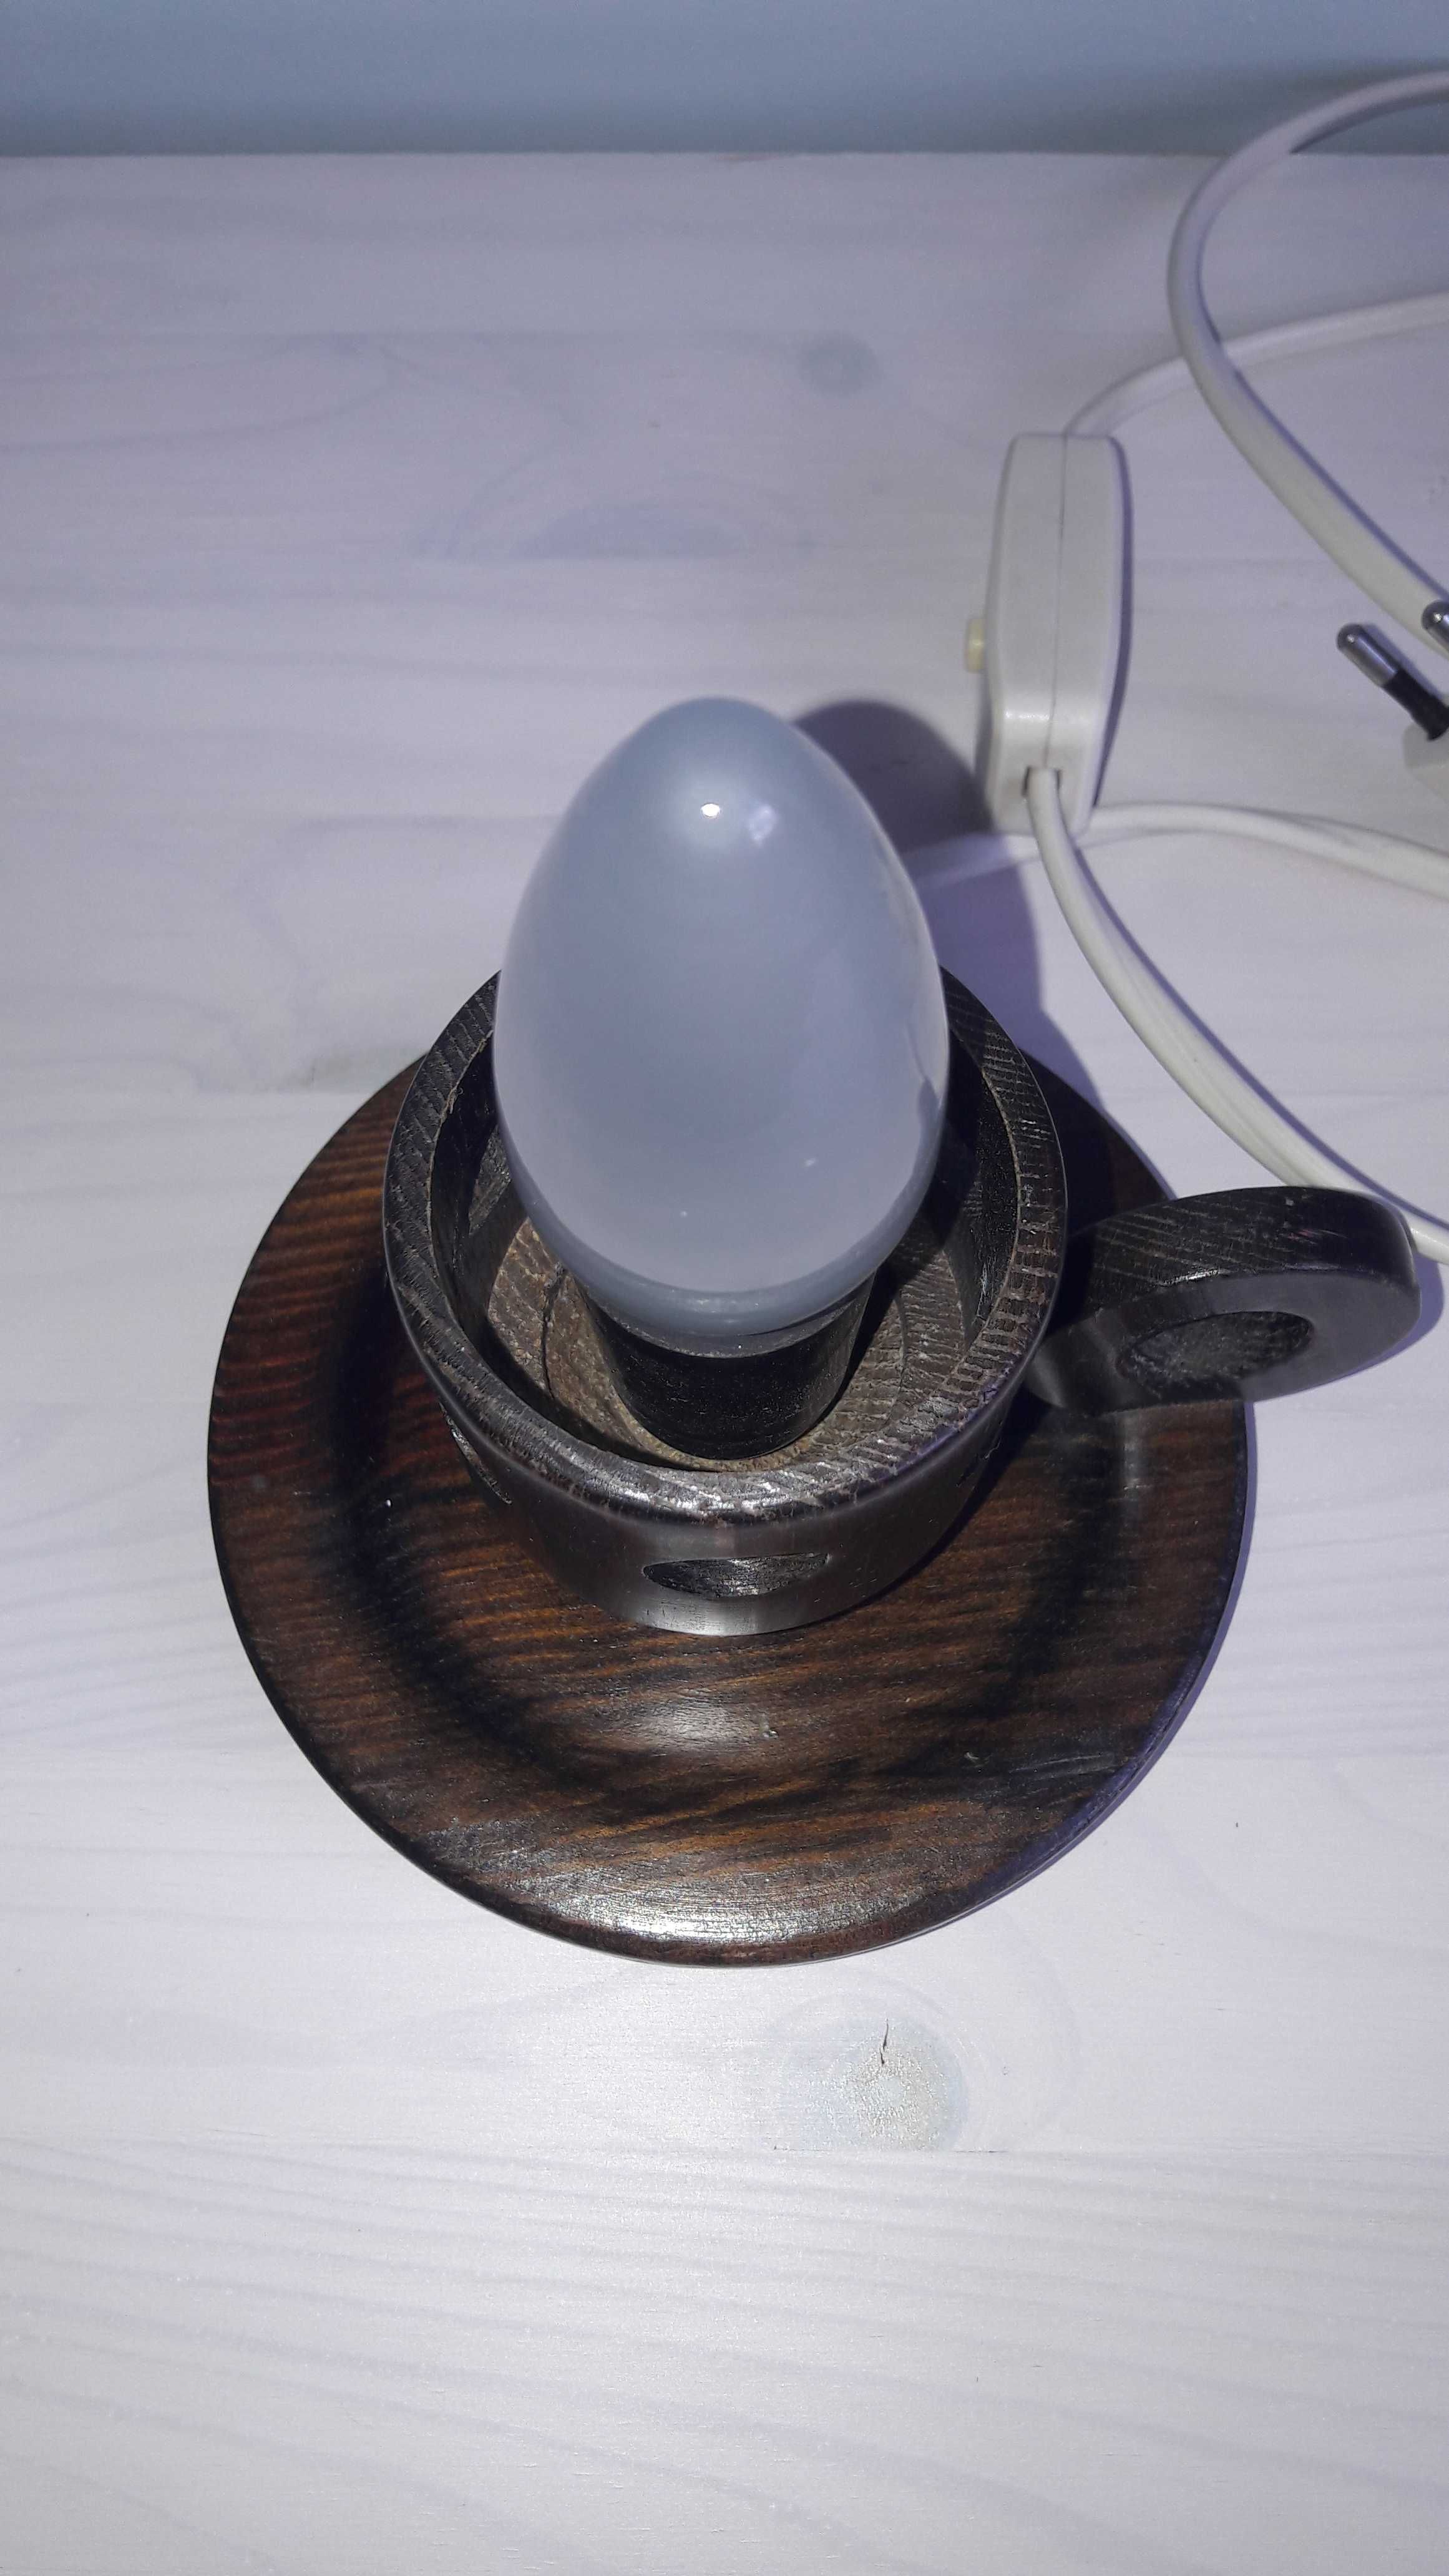 Lampka drewniana z uchwytem w kształcie świeczki